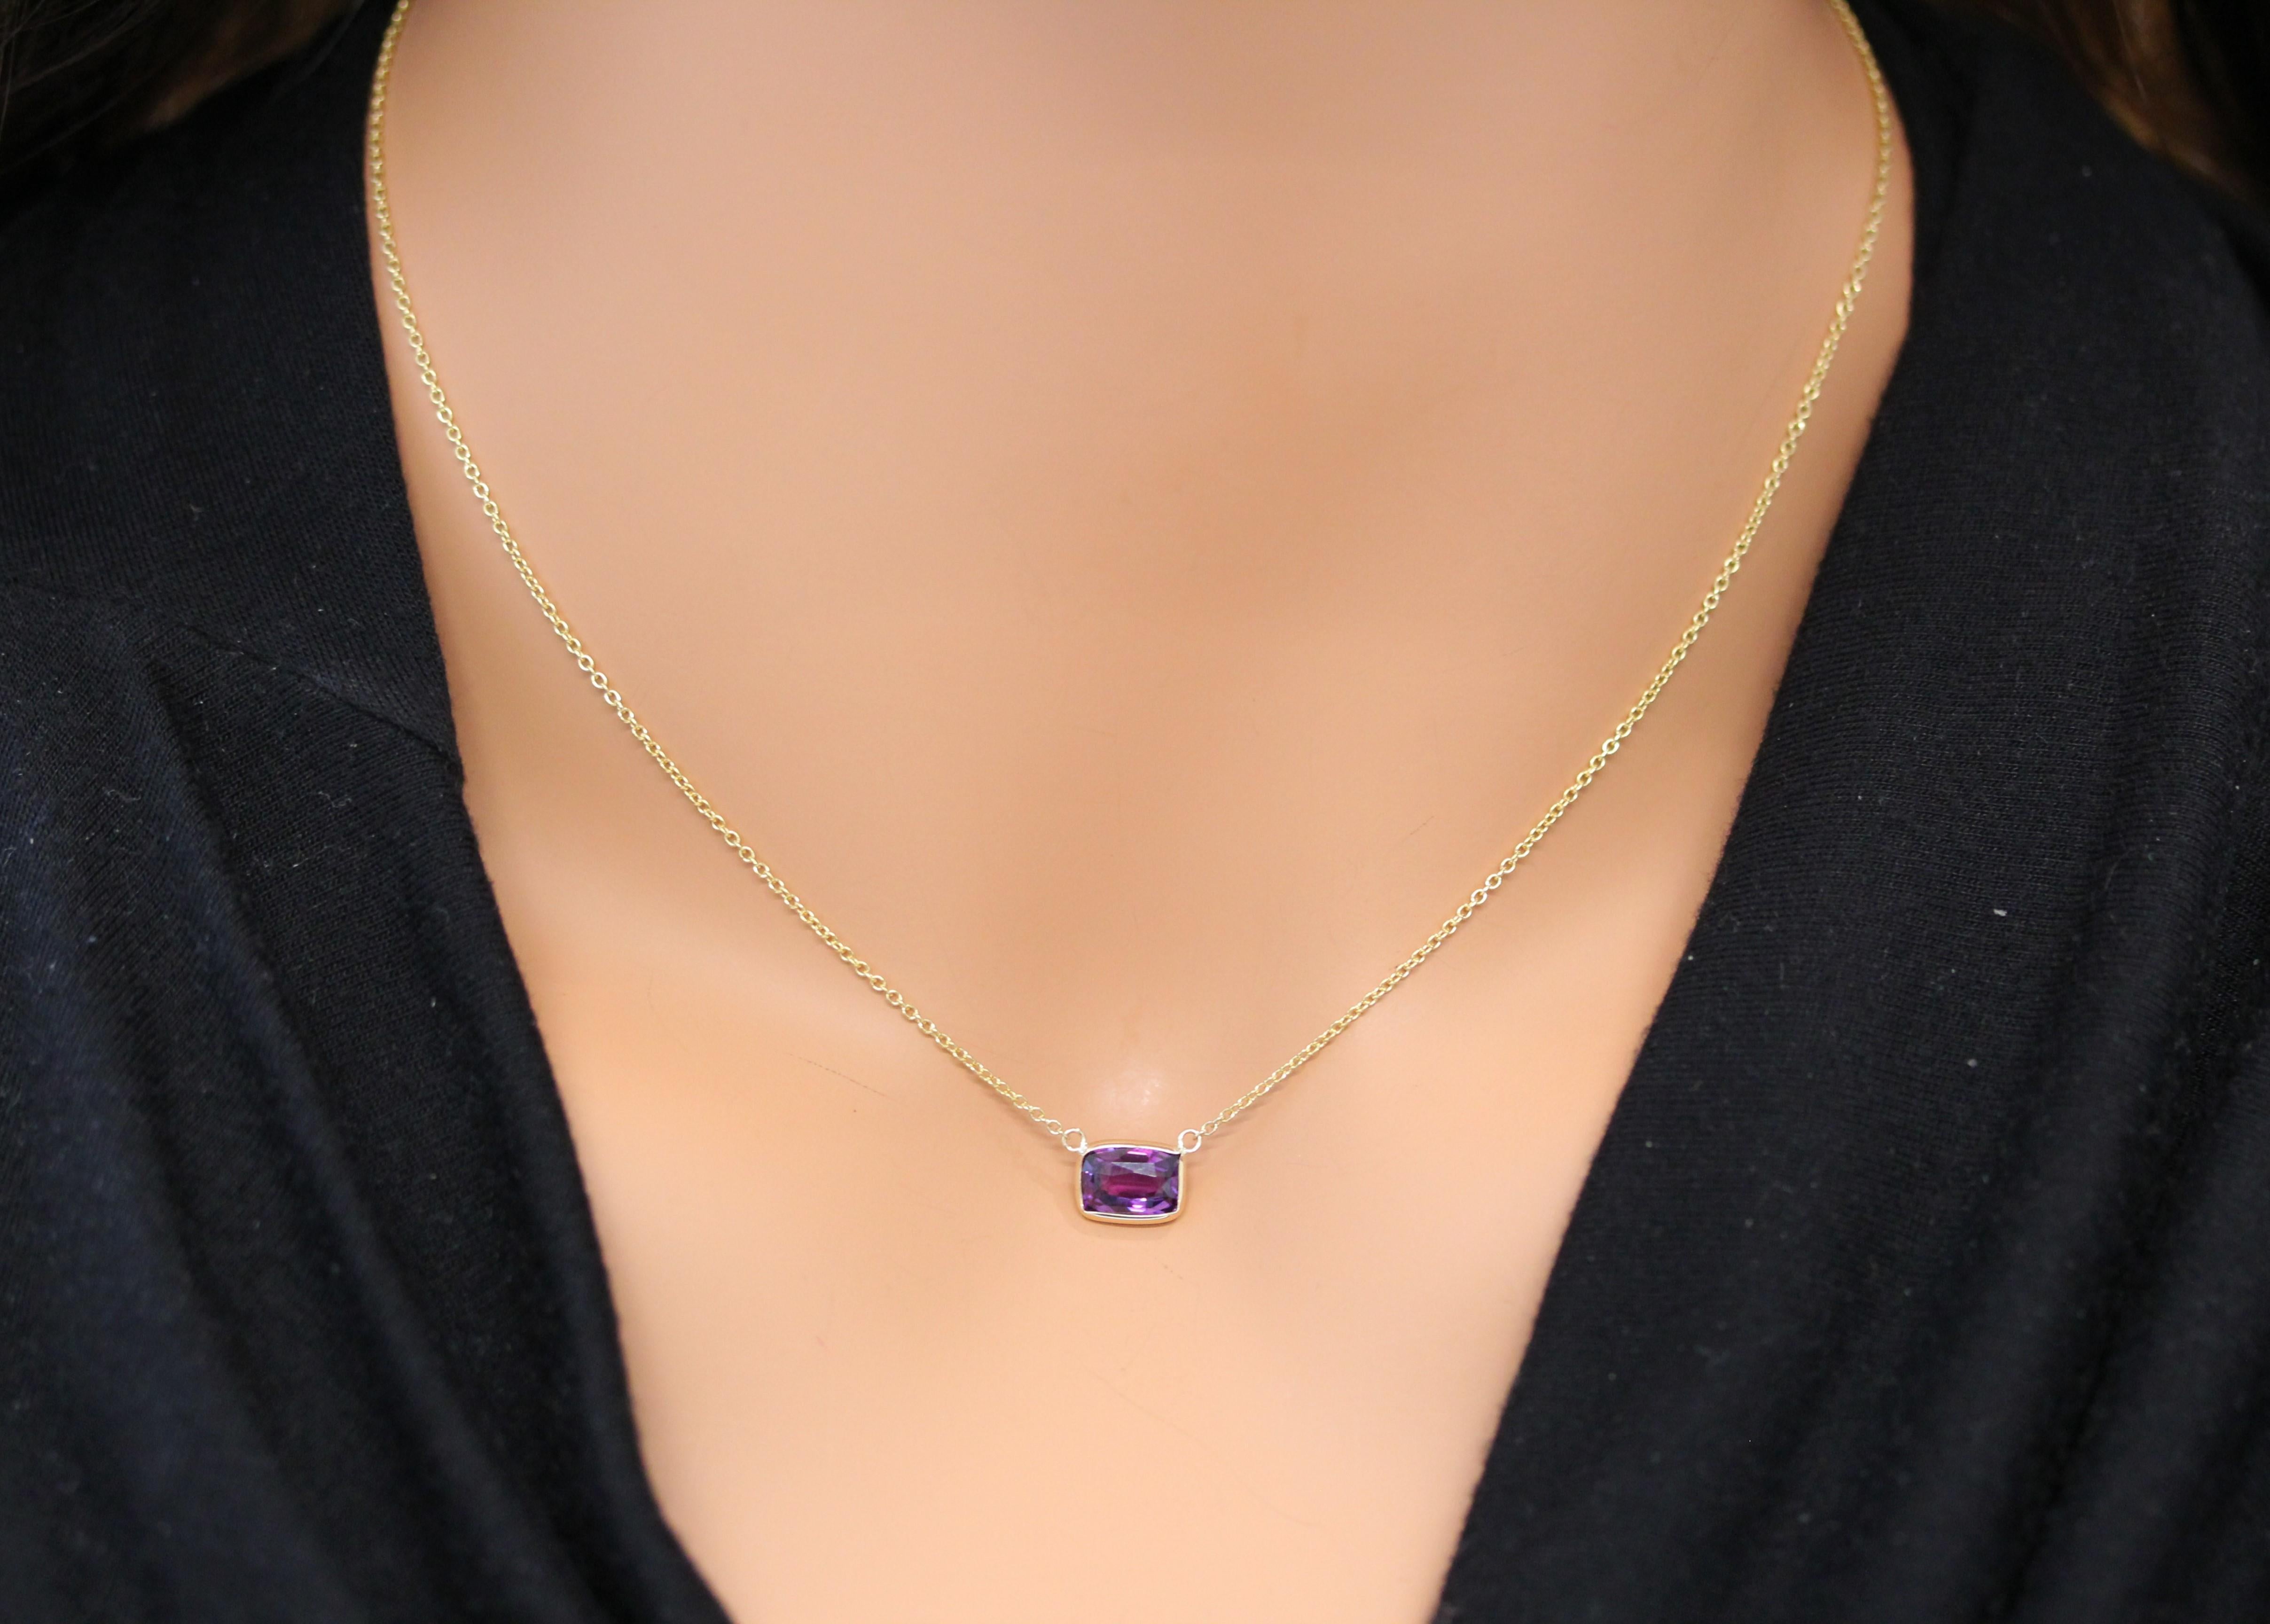 Le collier présente un saphir violet de 1,97 carat, taillé en coussin, serti dans un pendentif ou une monture en or jaune 14 carats. Les arêtes douces de la taille coussin et la couleur du saphir violet sur la monture en or jaune sont susceptibles